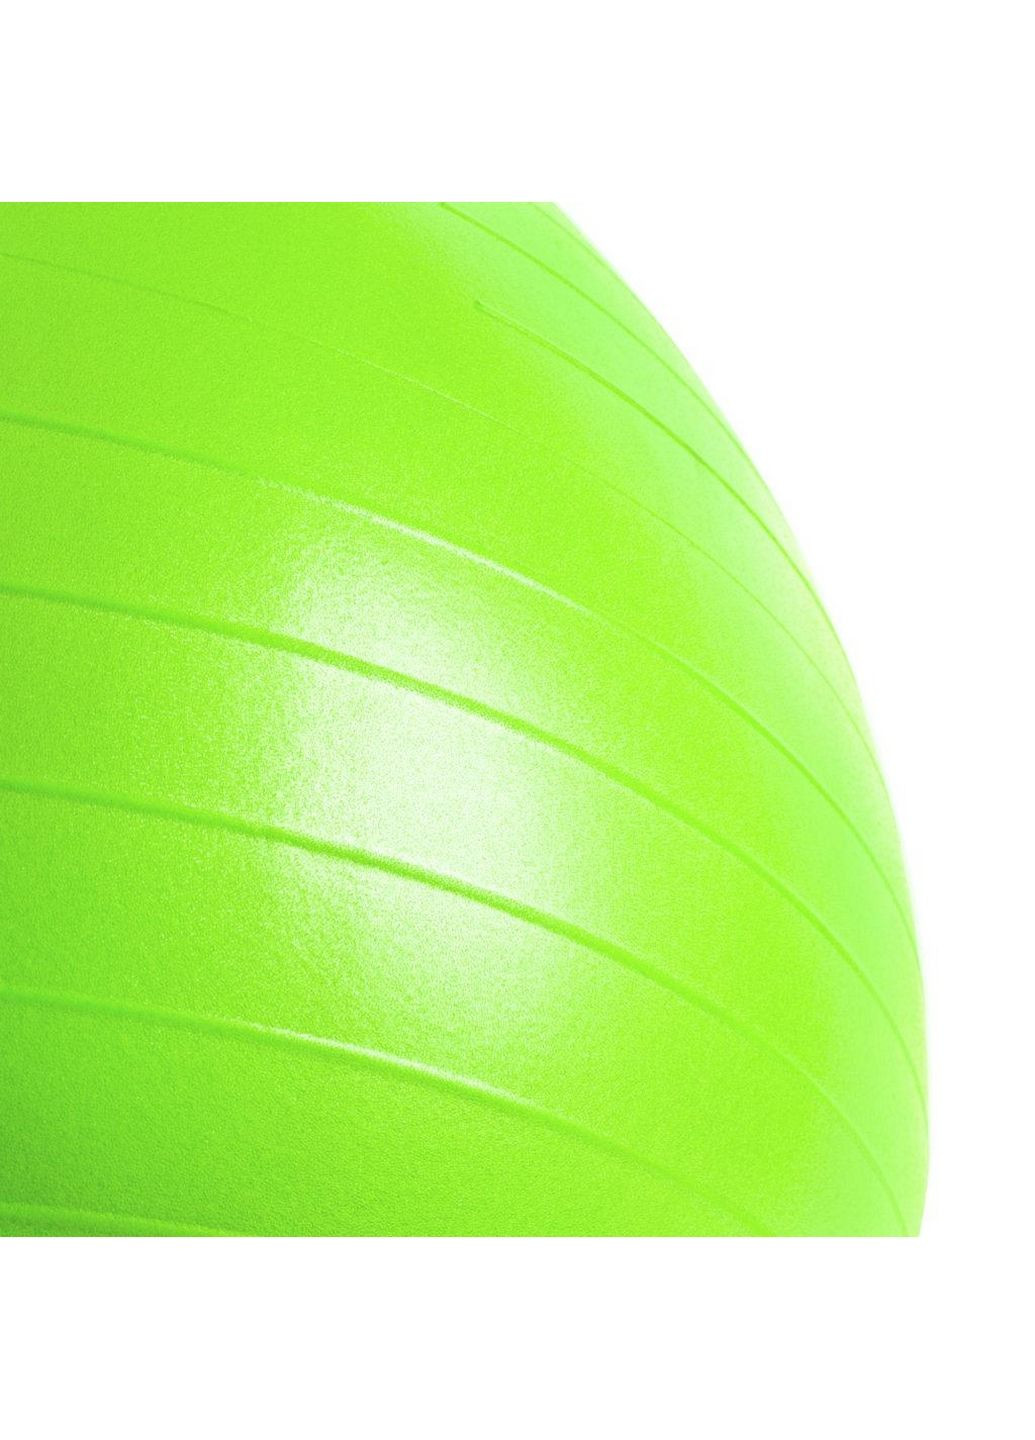 Гімнастичний мяч Spokey (282586839)